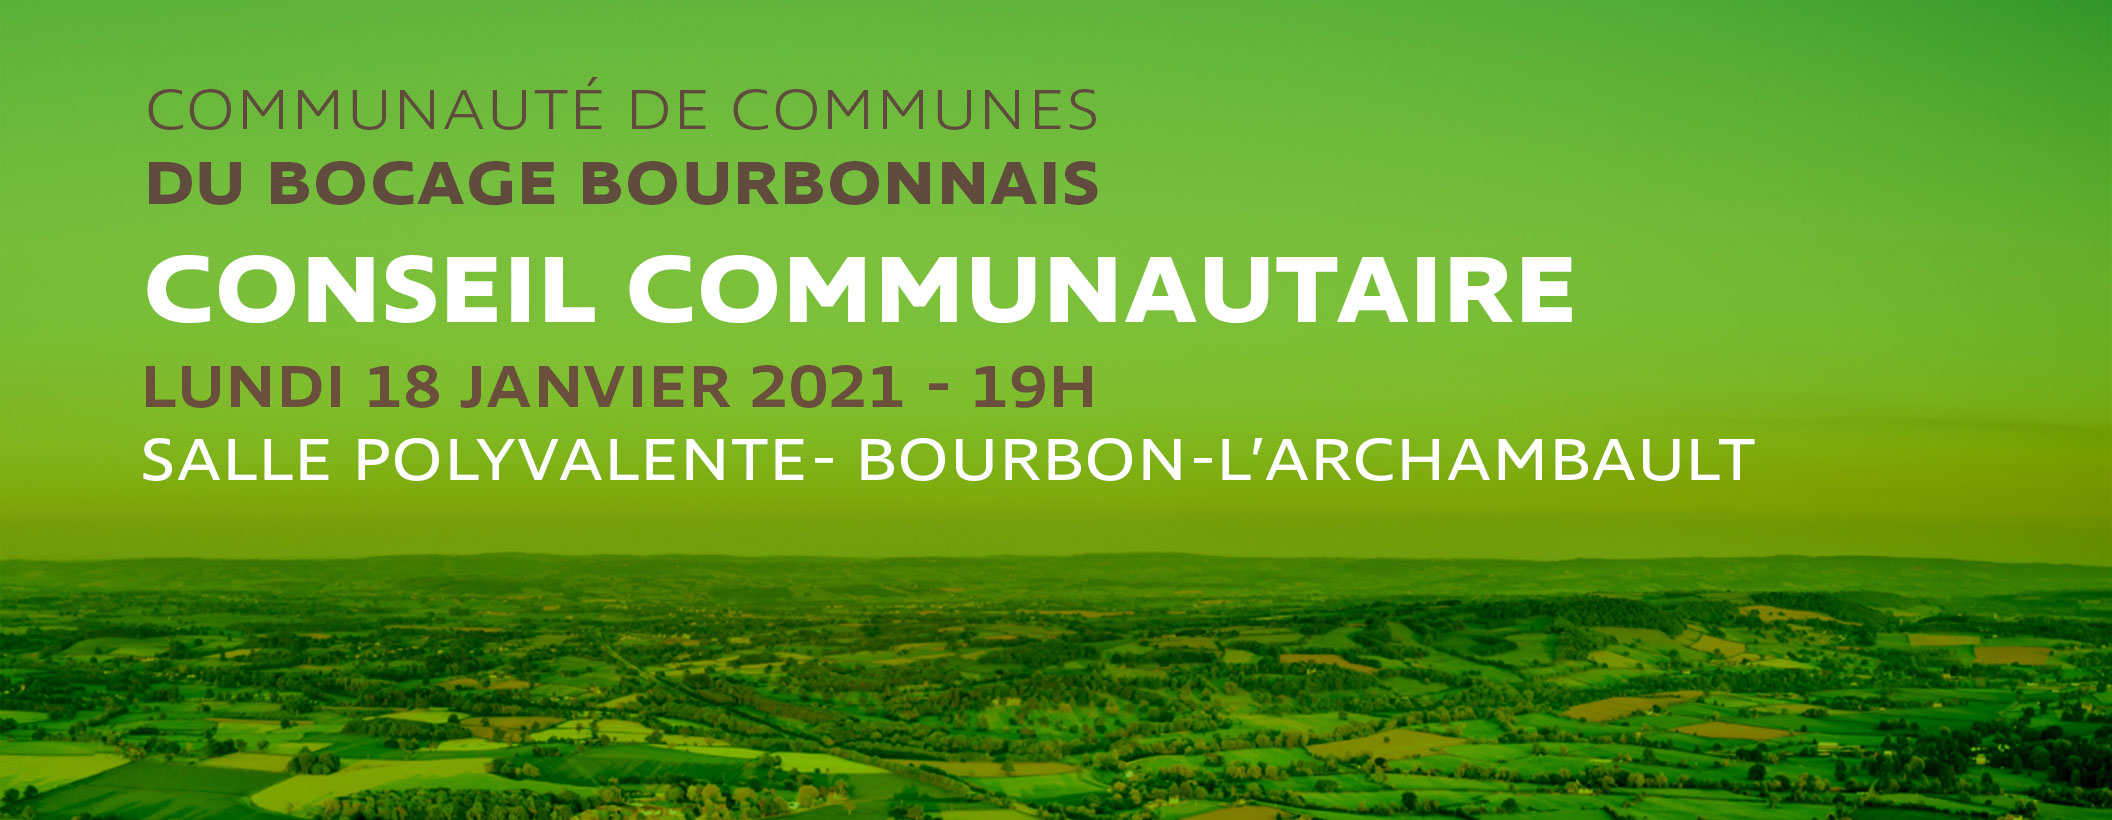 Prochain Conseil Communautaire : lundi 18 janvier à Bourbon-l'Archambault